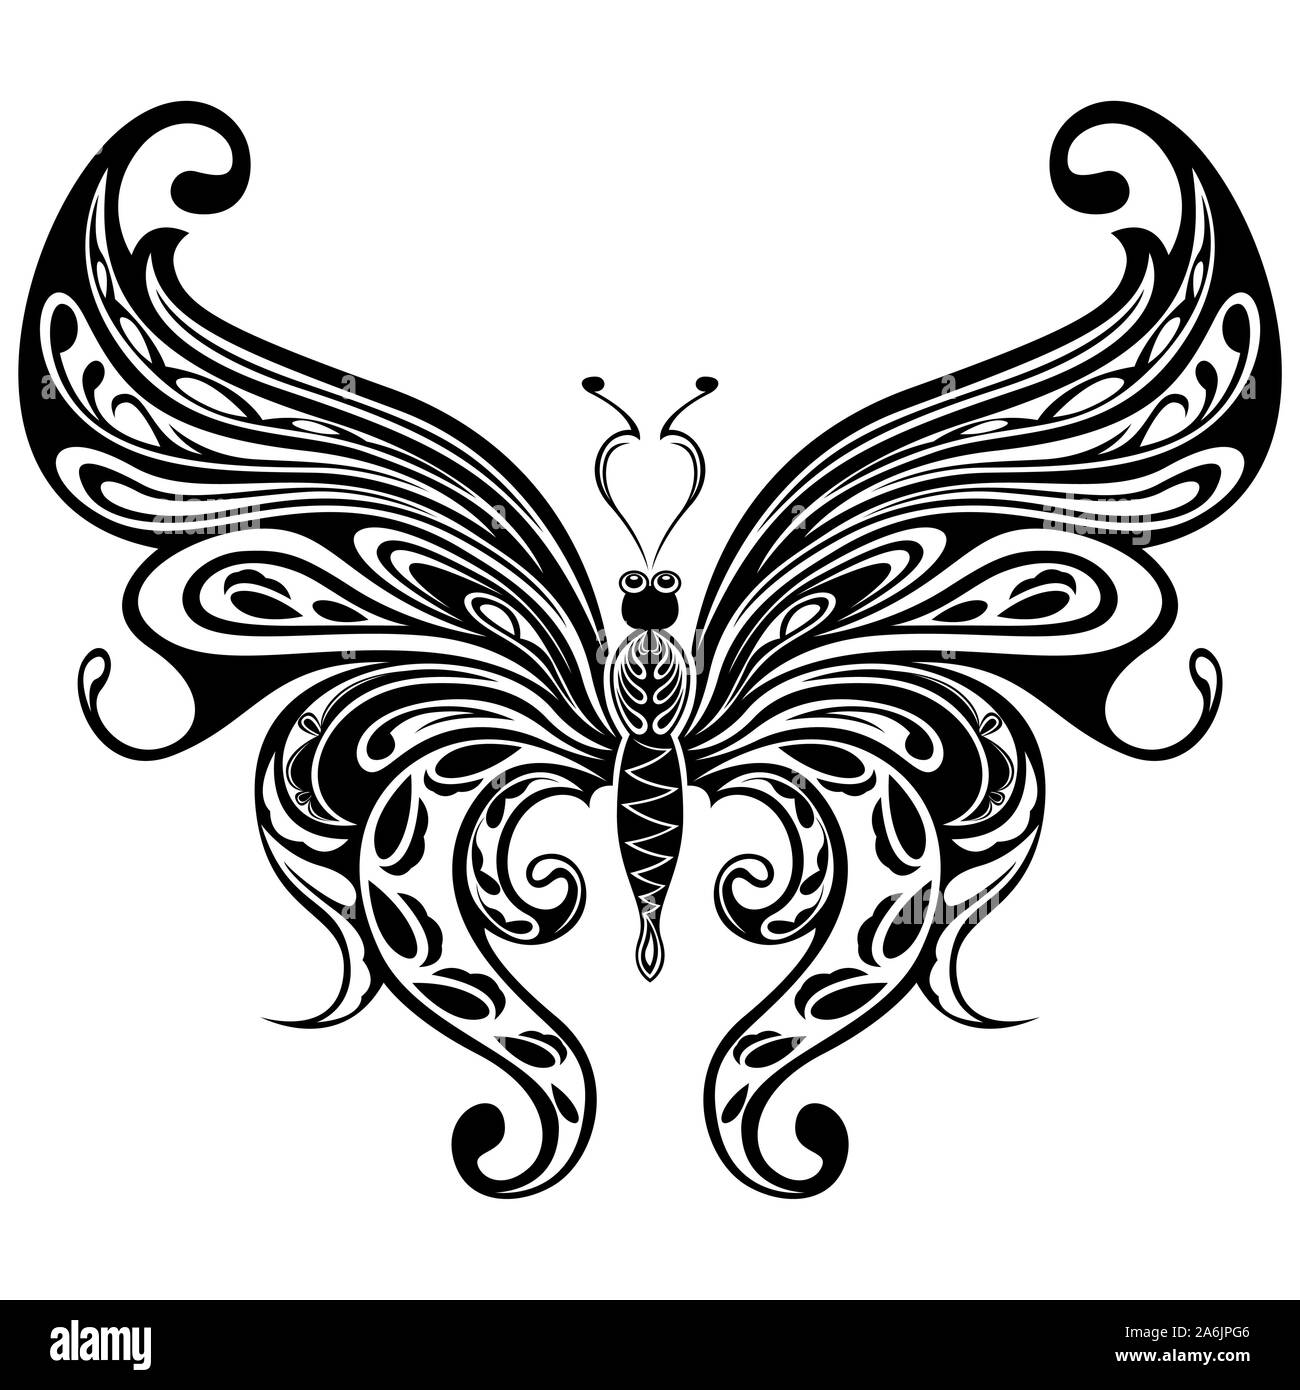 Nero stencil ornamentali di bellissimi fiori farfalla isolato su uno sfondo bianco, del disegno a mano illustrazione vettoriale Illustrazione Vettoriale